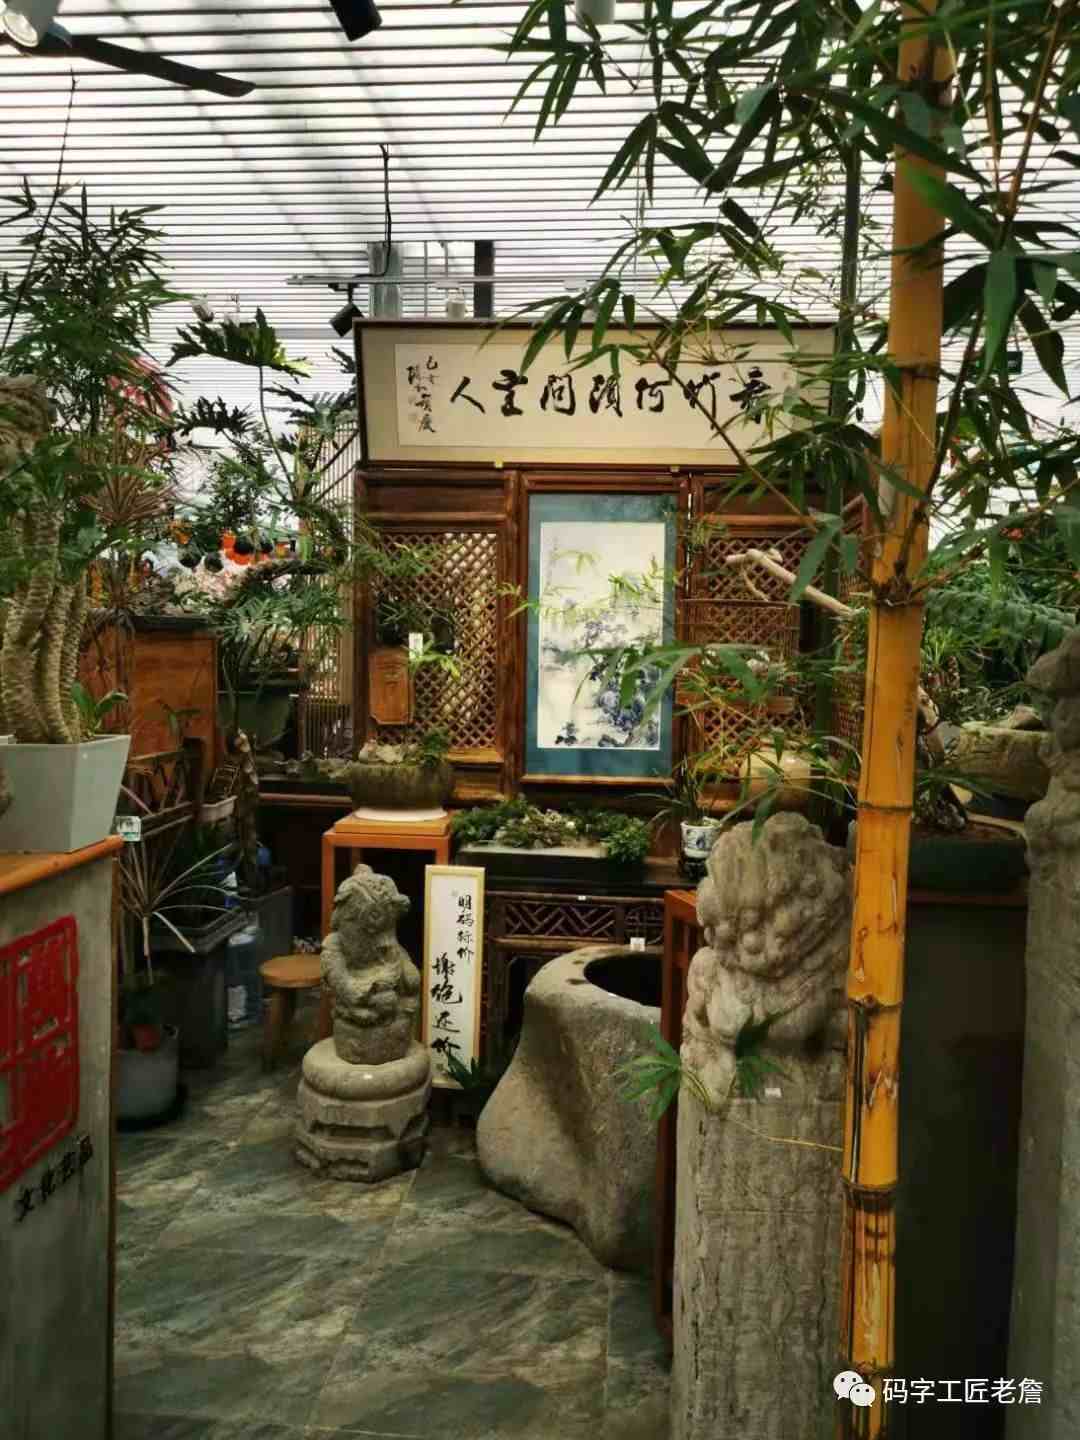 北京城南，有个花卉创意园